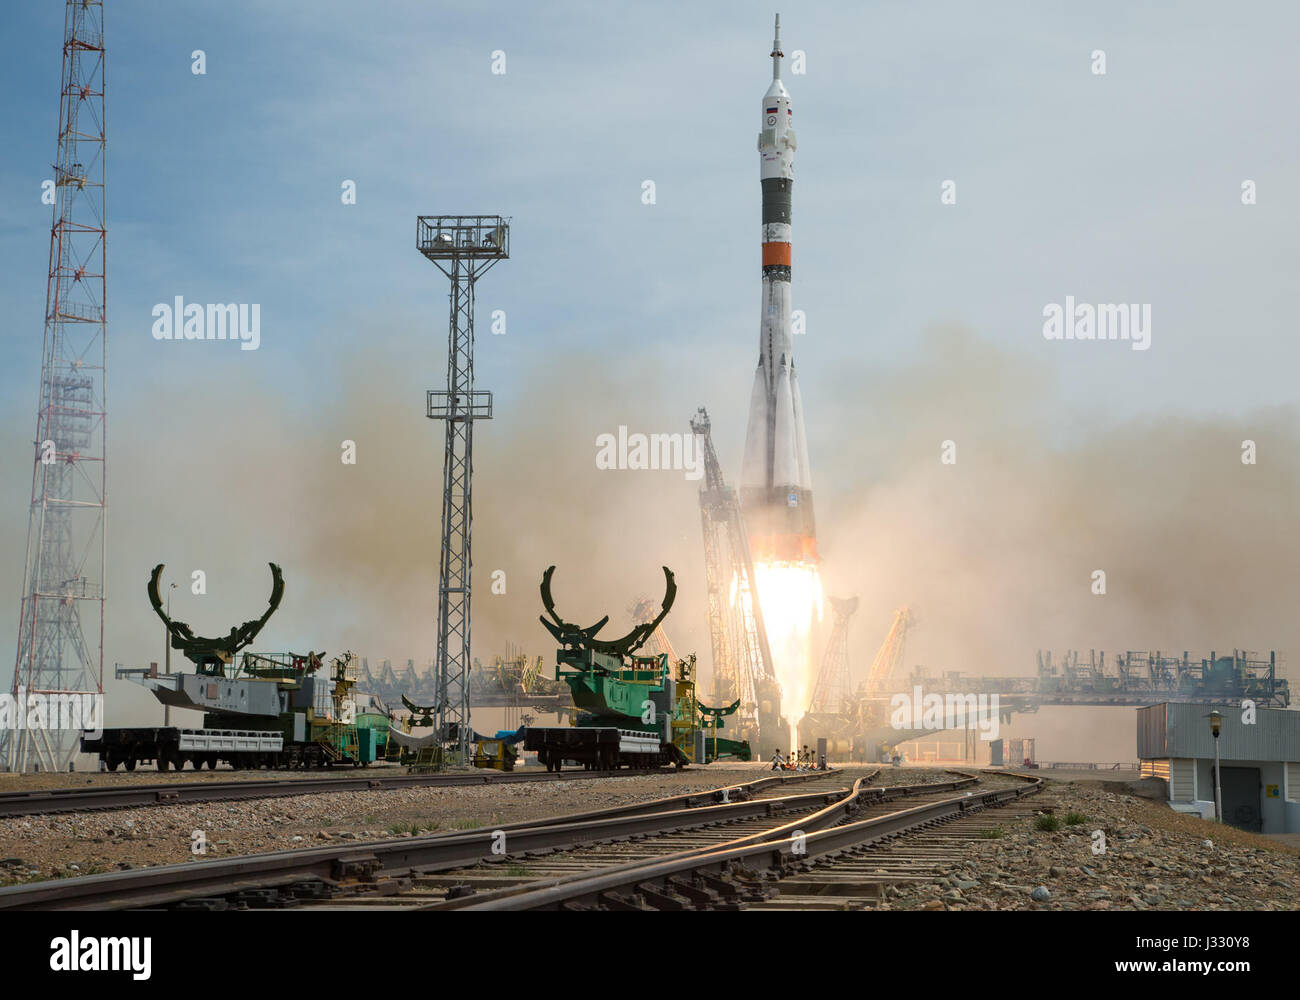 La MS-04 lanzamientos de cohetes Soyuz desde el cosmódromo de Baikonur en Kazajstán el jueves, 20 de abril de 2017 hora de Baikonur llevando Expedition 51 Comandante Fyodor Yurchikhin Soyuz de Roscosmos y el ingeniero de vuelo Jack Fischer de la NASA en órbita para comenzar sus cuatro meses y medio en la misión de la Estación Espacial Internacional. (Crédito de la imagen: NASA/Aubrey Gemignani) Foto de stock